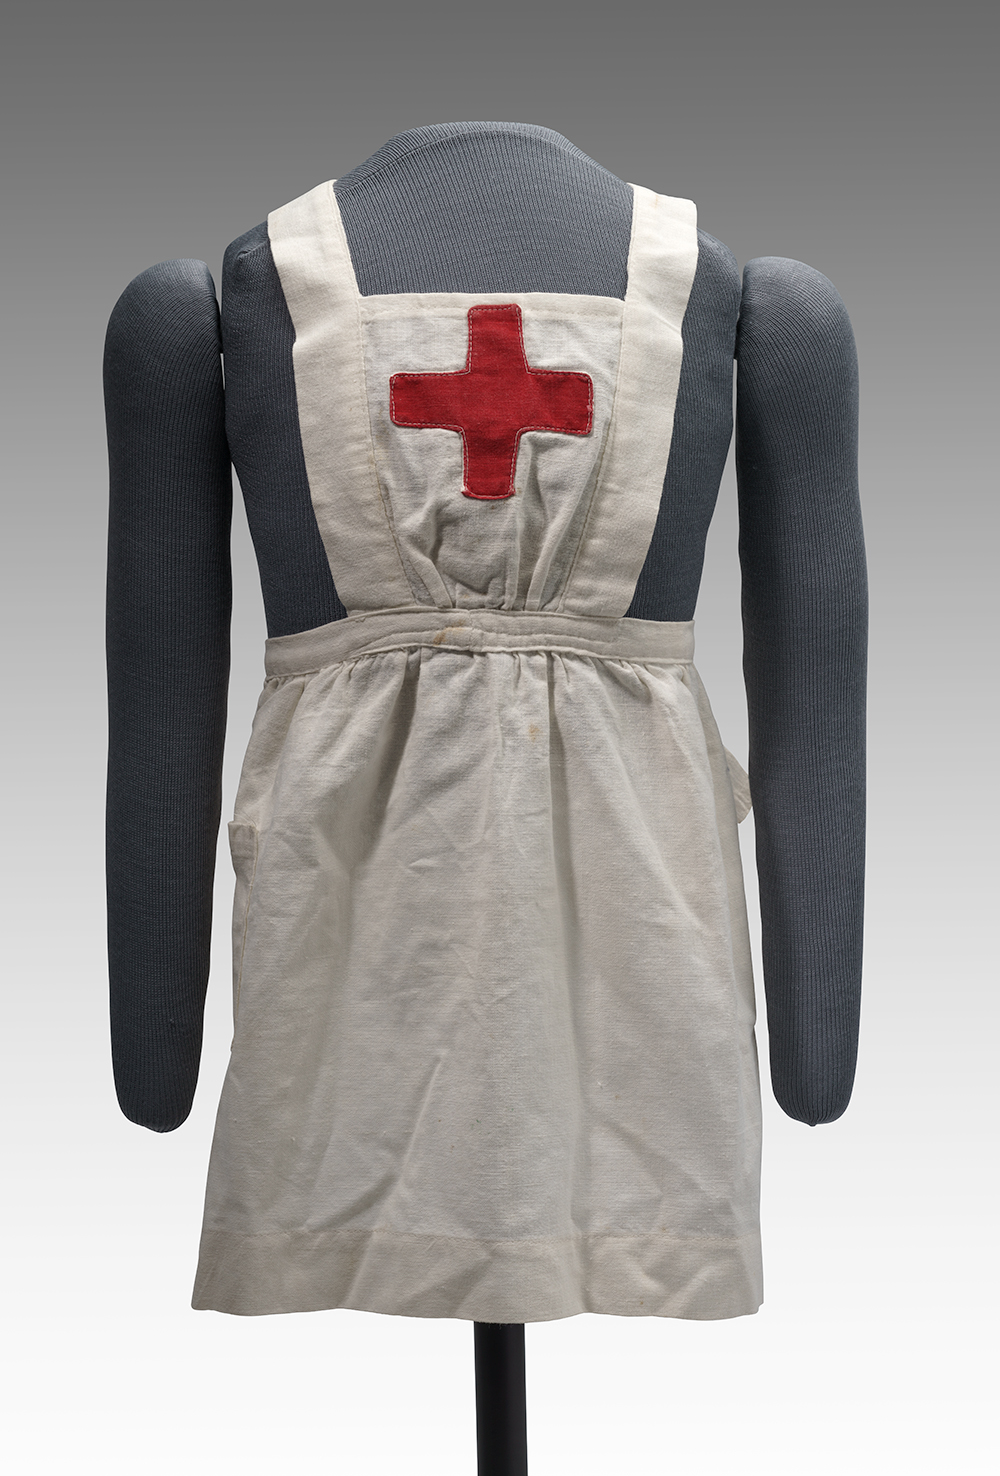 Photographie moderne d'un petit tablier à blouse blanche avec une croix rouge sur le devant